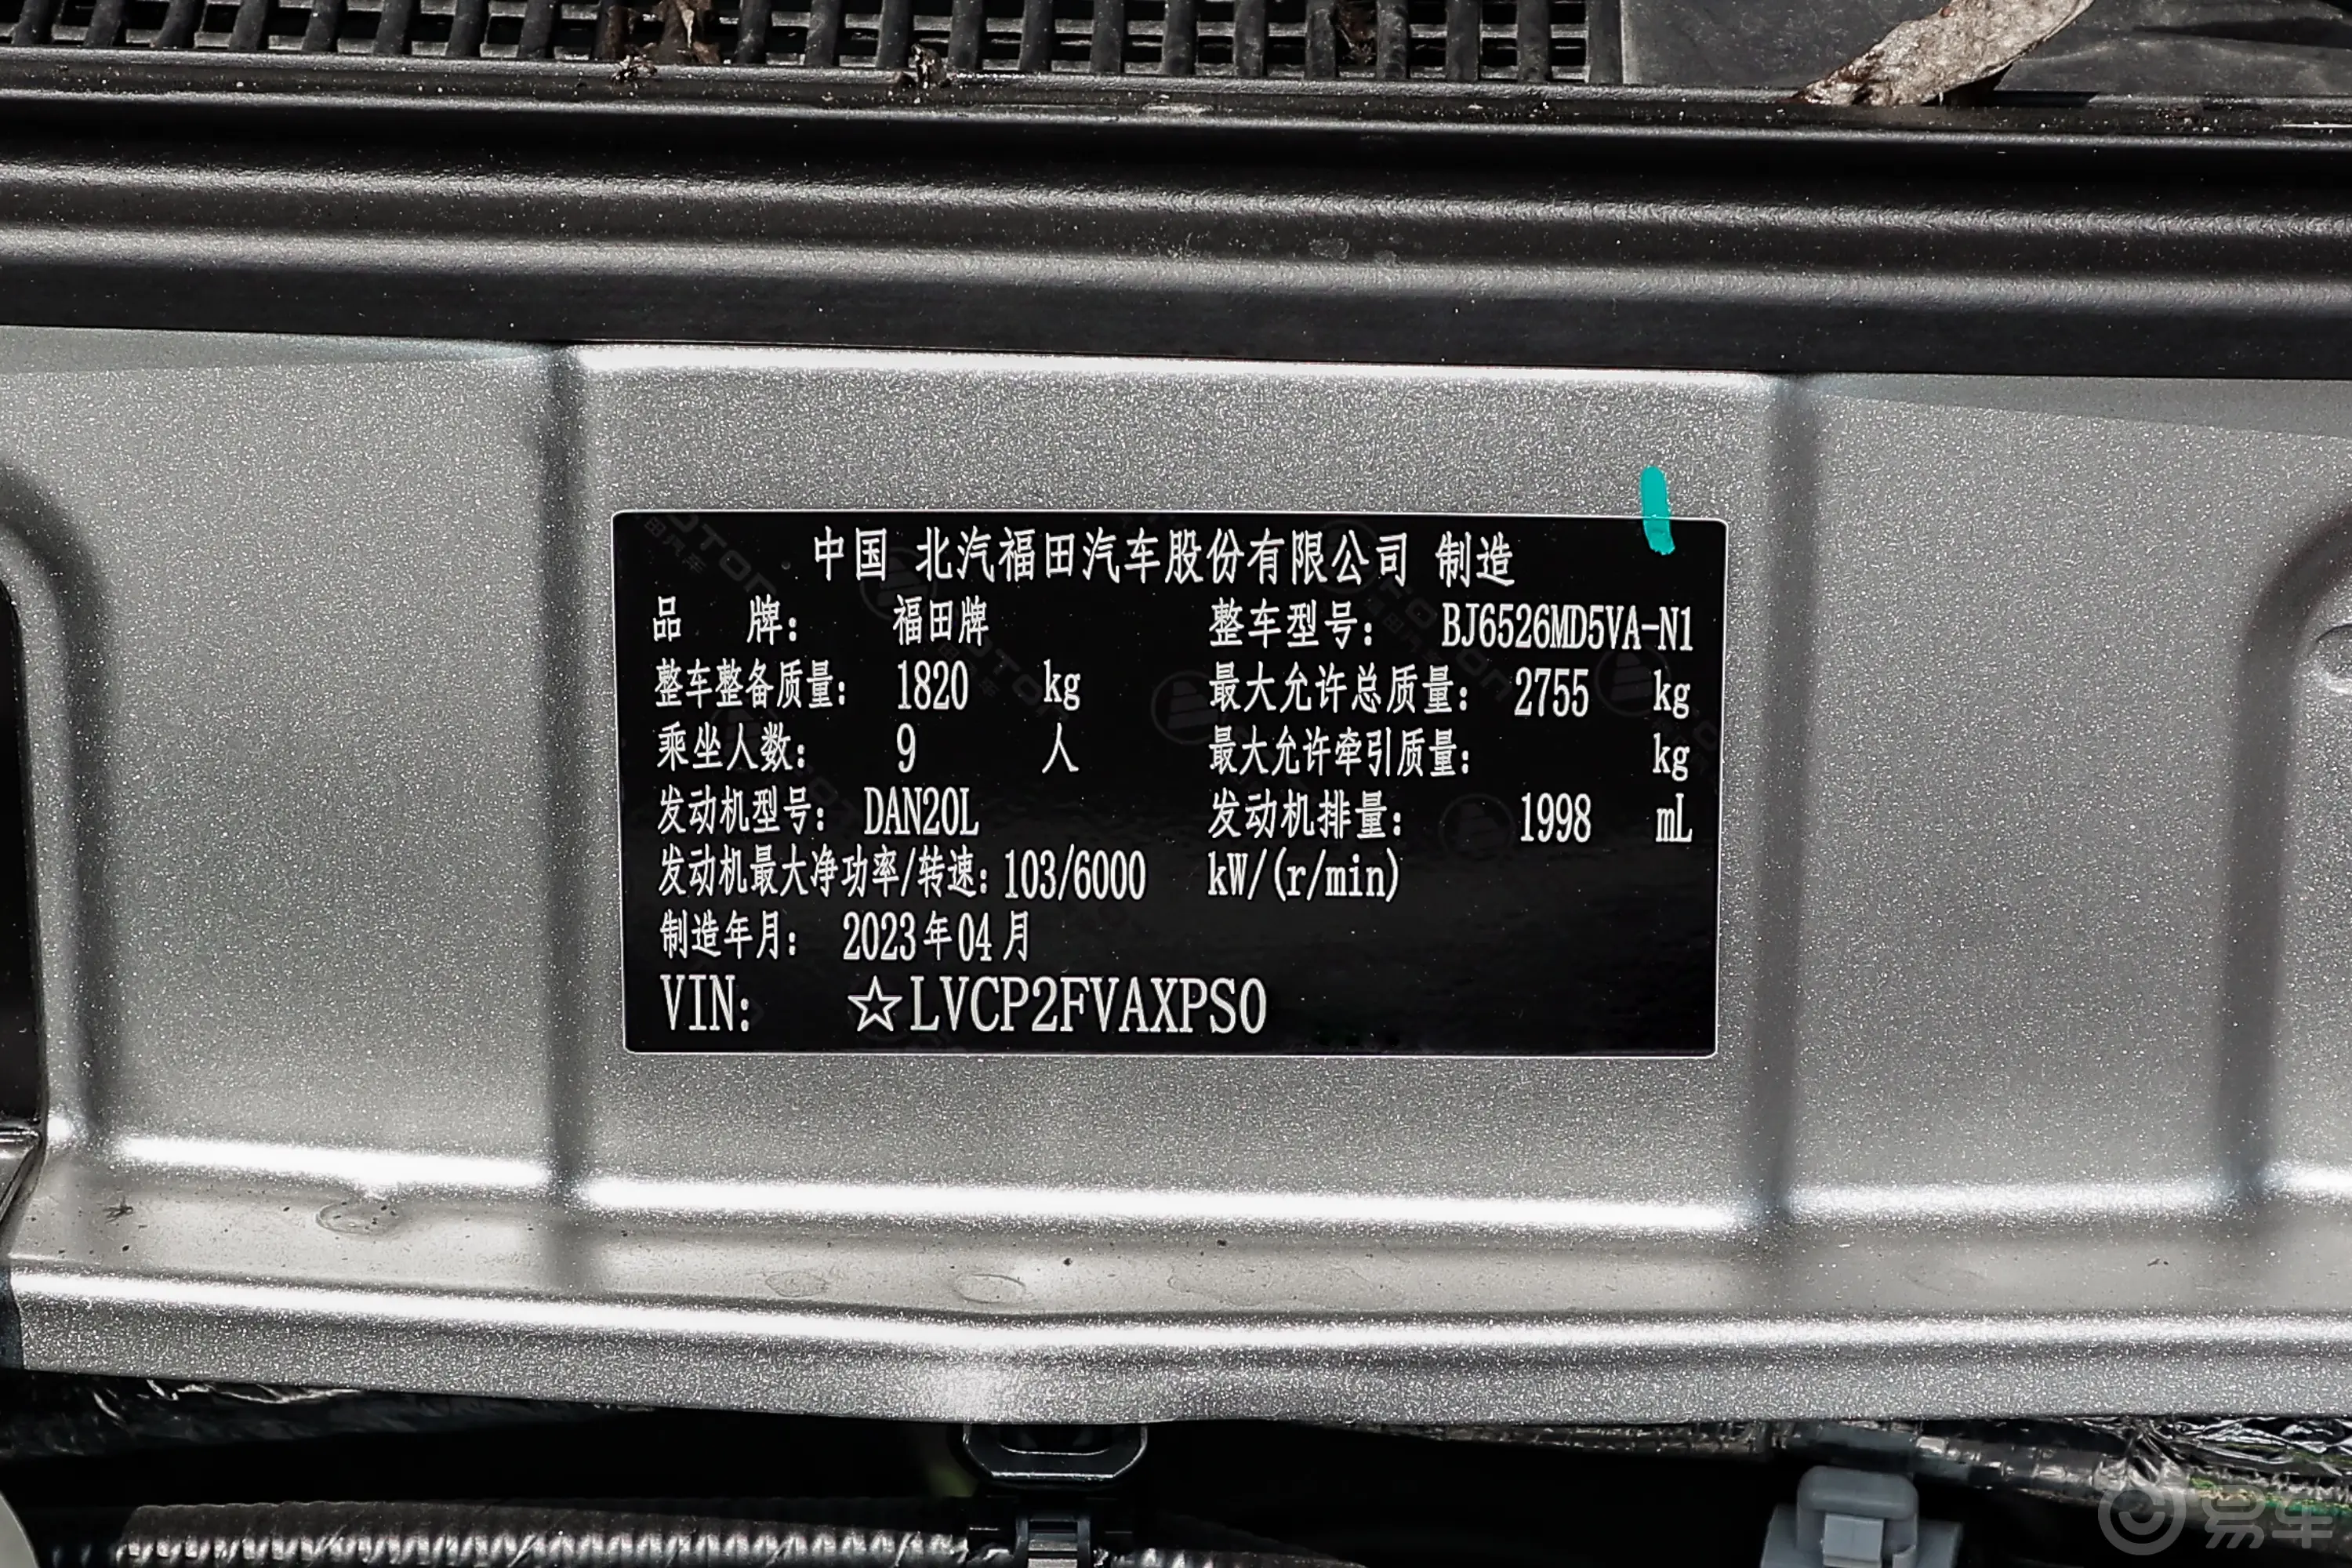 风景G5商旅版 2.0L 客车 7/9座 汽油车辆信息铭牌